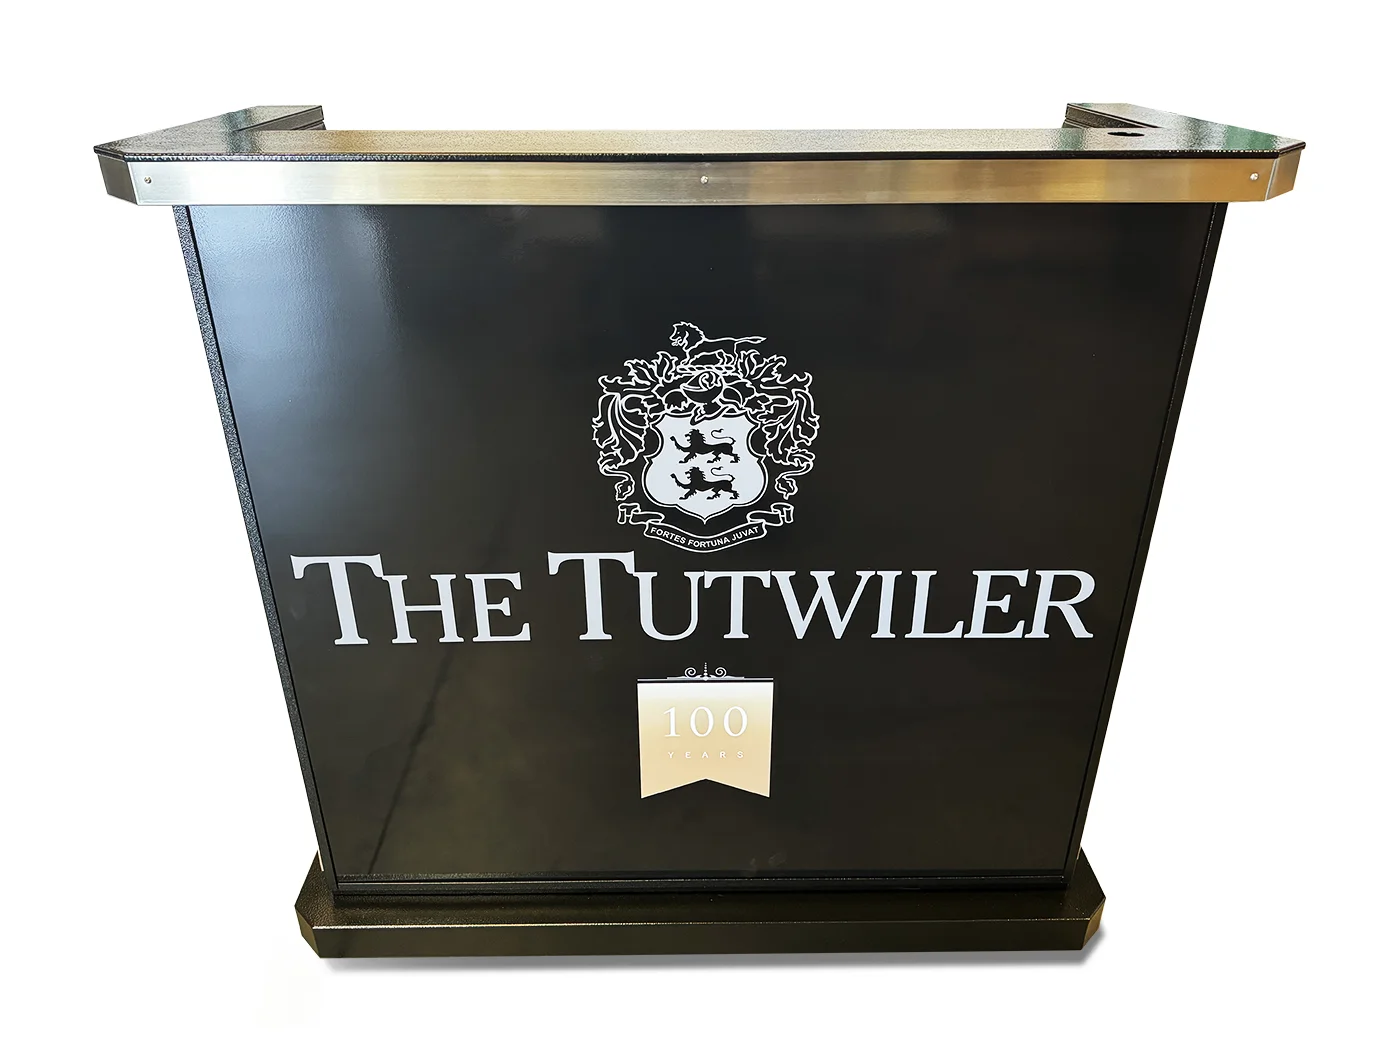 The Tutwiler